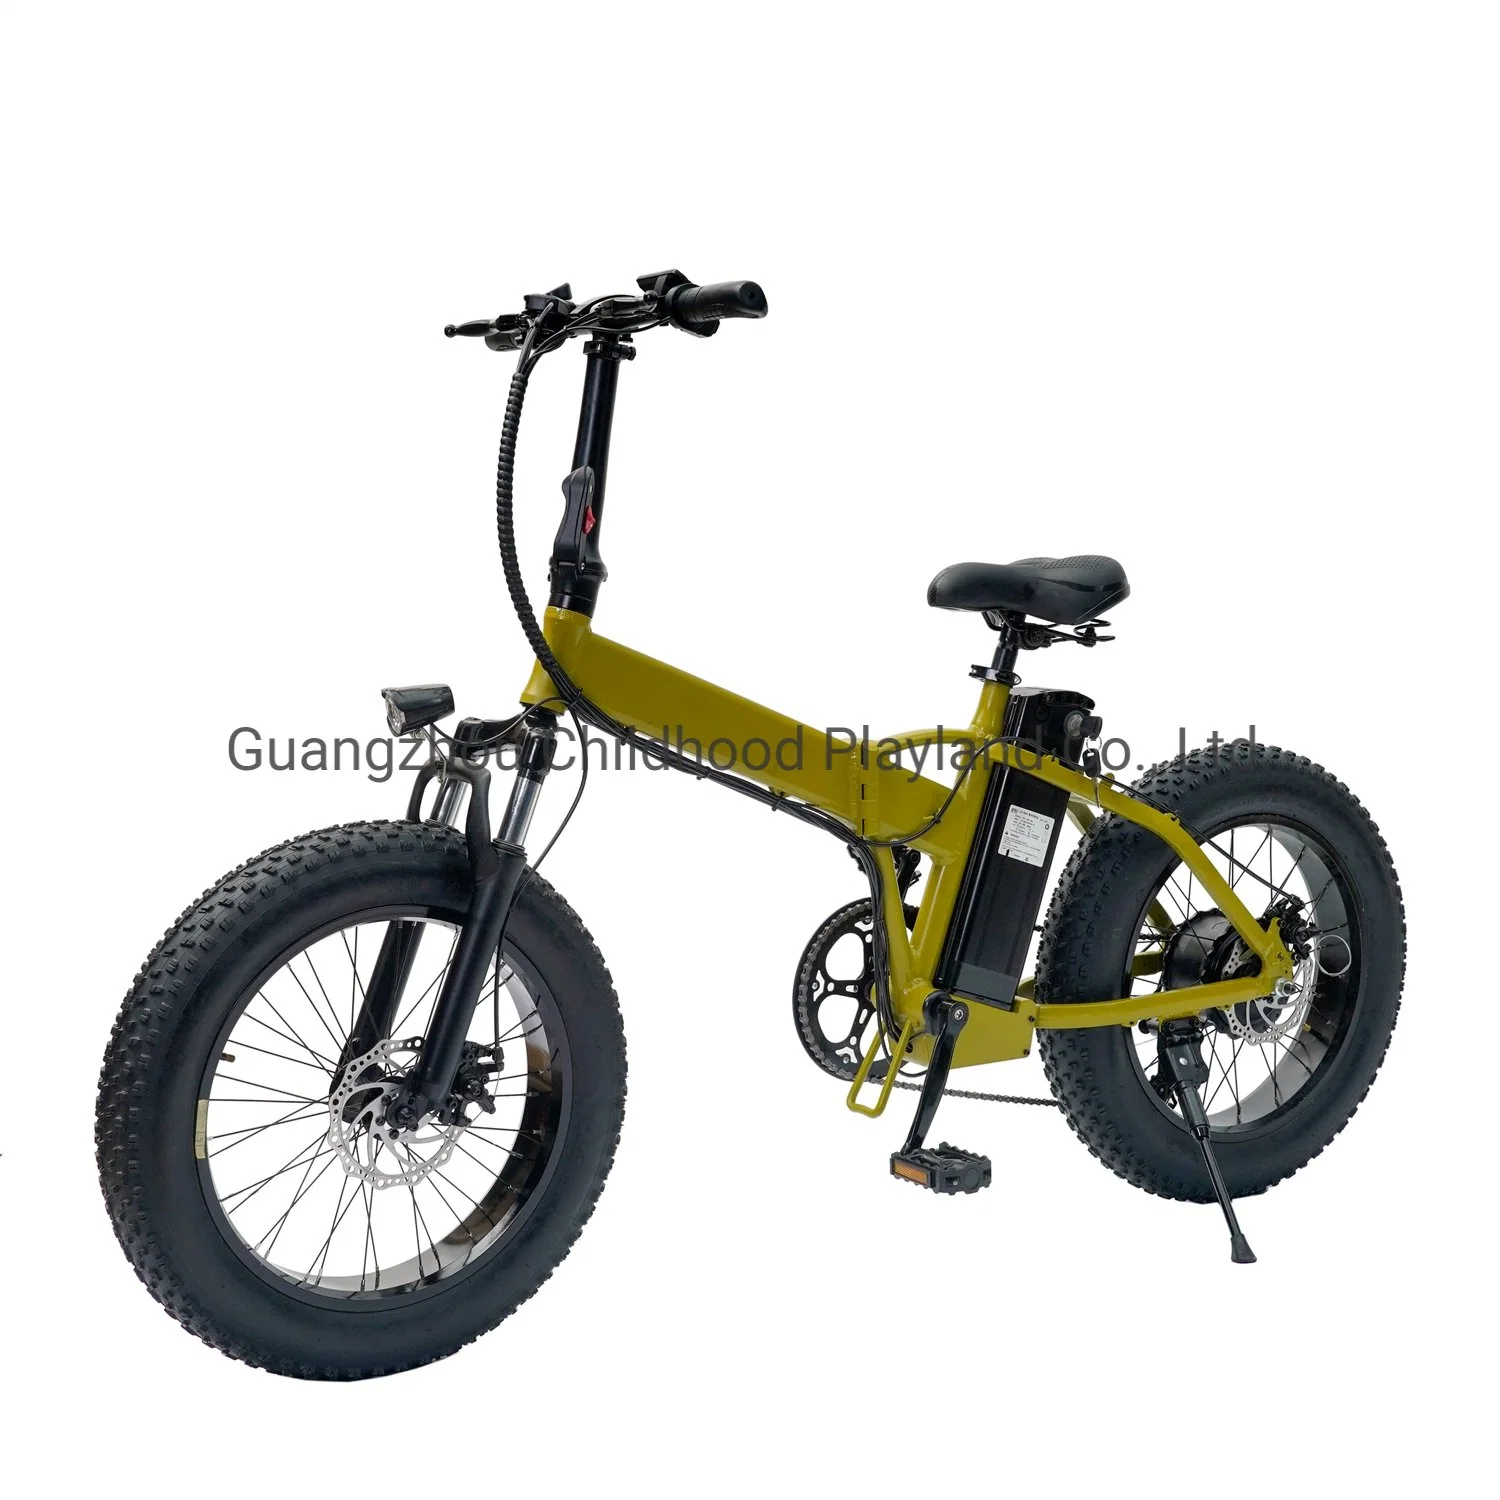 Nouveau modèle de vélo électrique pliable à moteur puissant et à grande vitesse. Meilleur prix pour les vélos électriques de montagne.